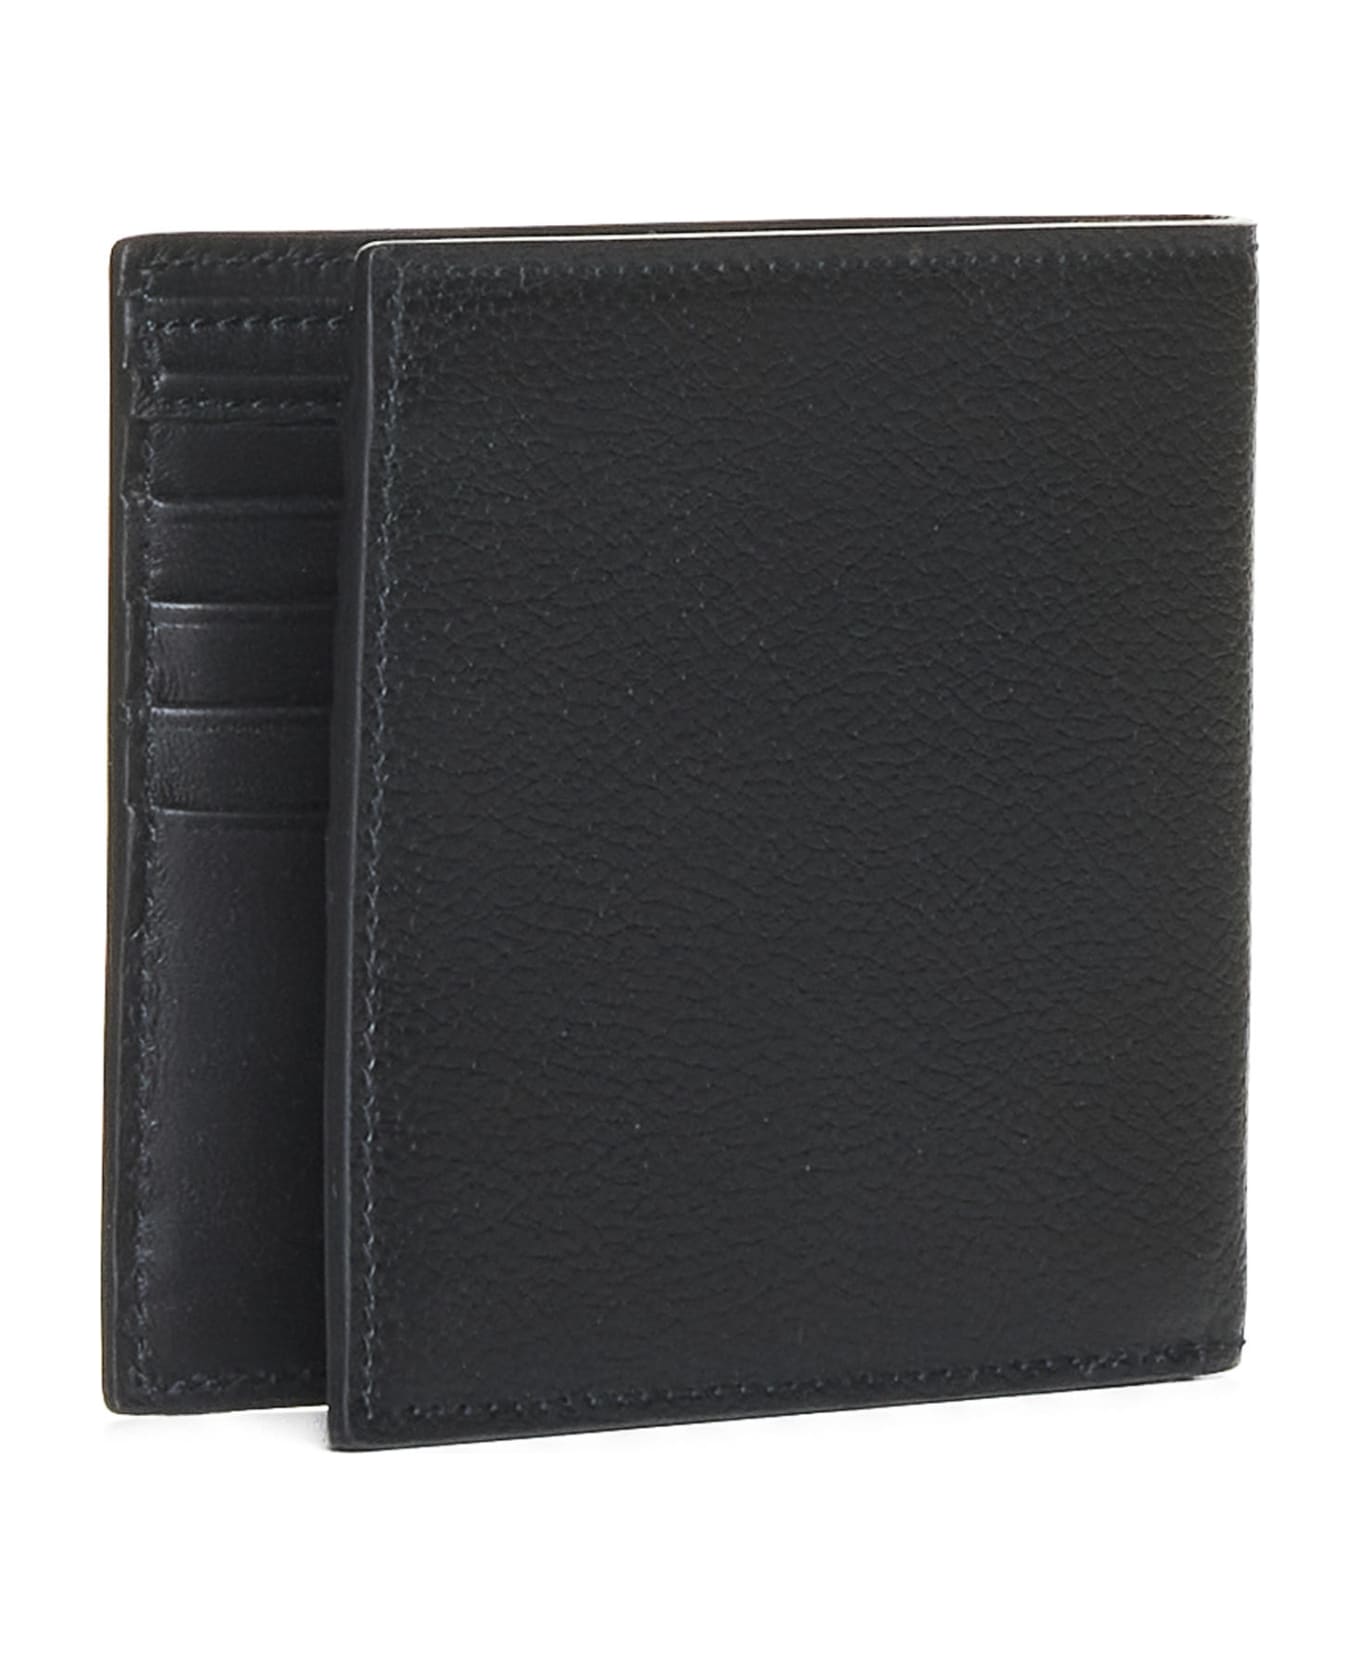 Alexander McQueen Calfskin Wallet - Black/khaki